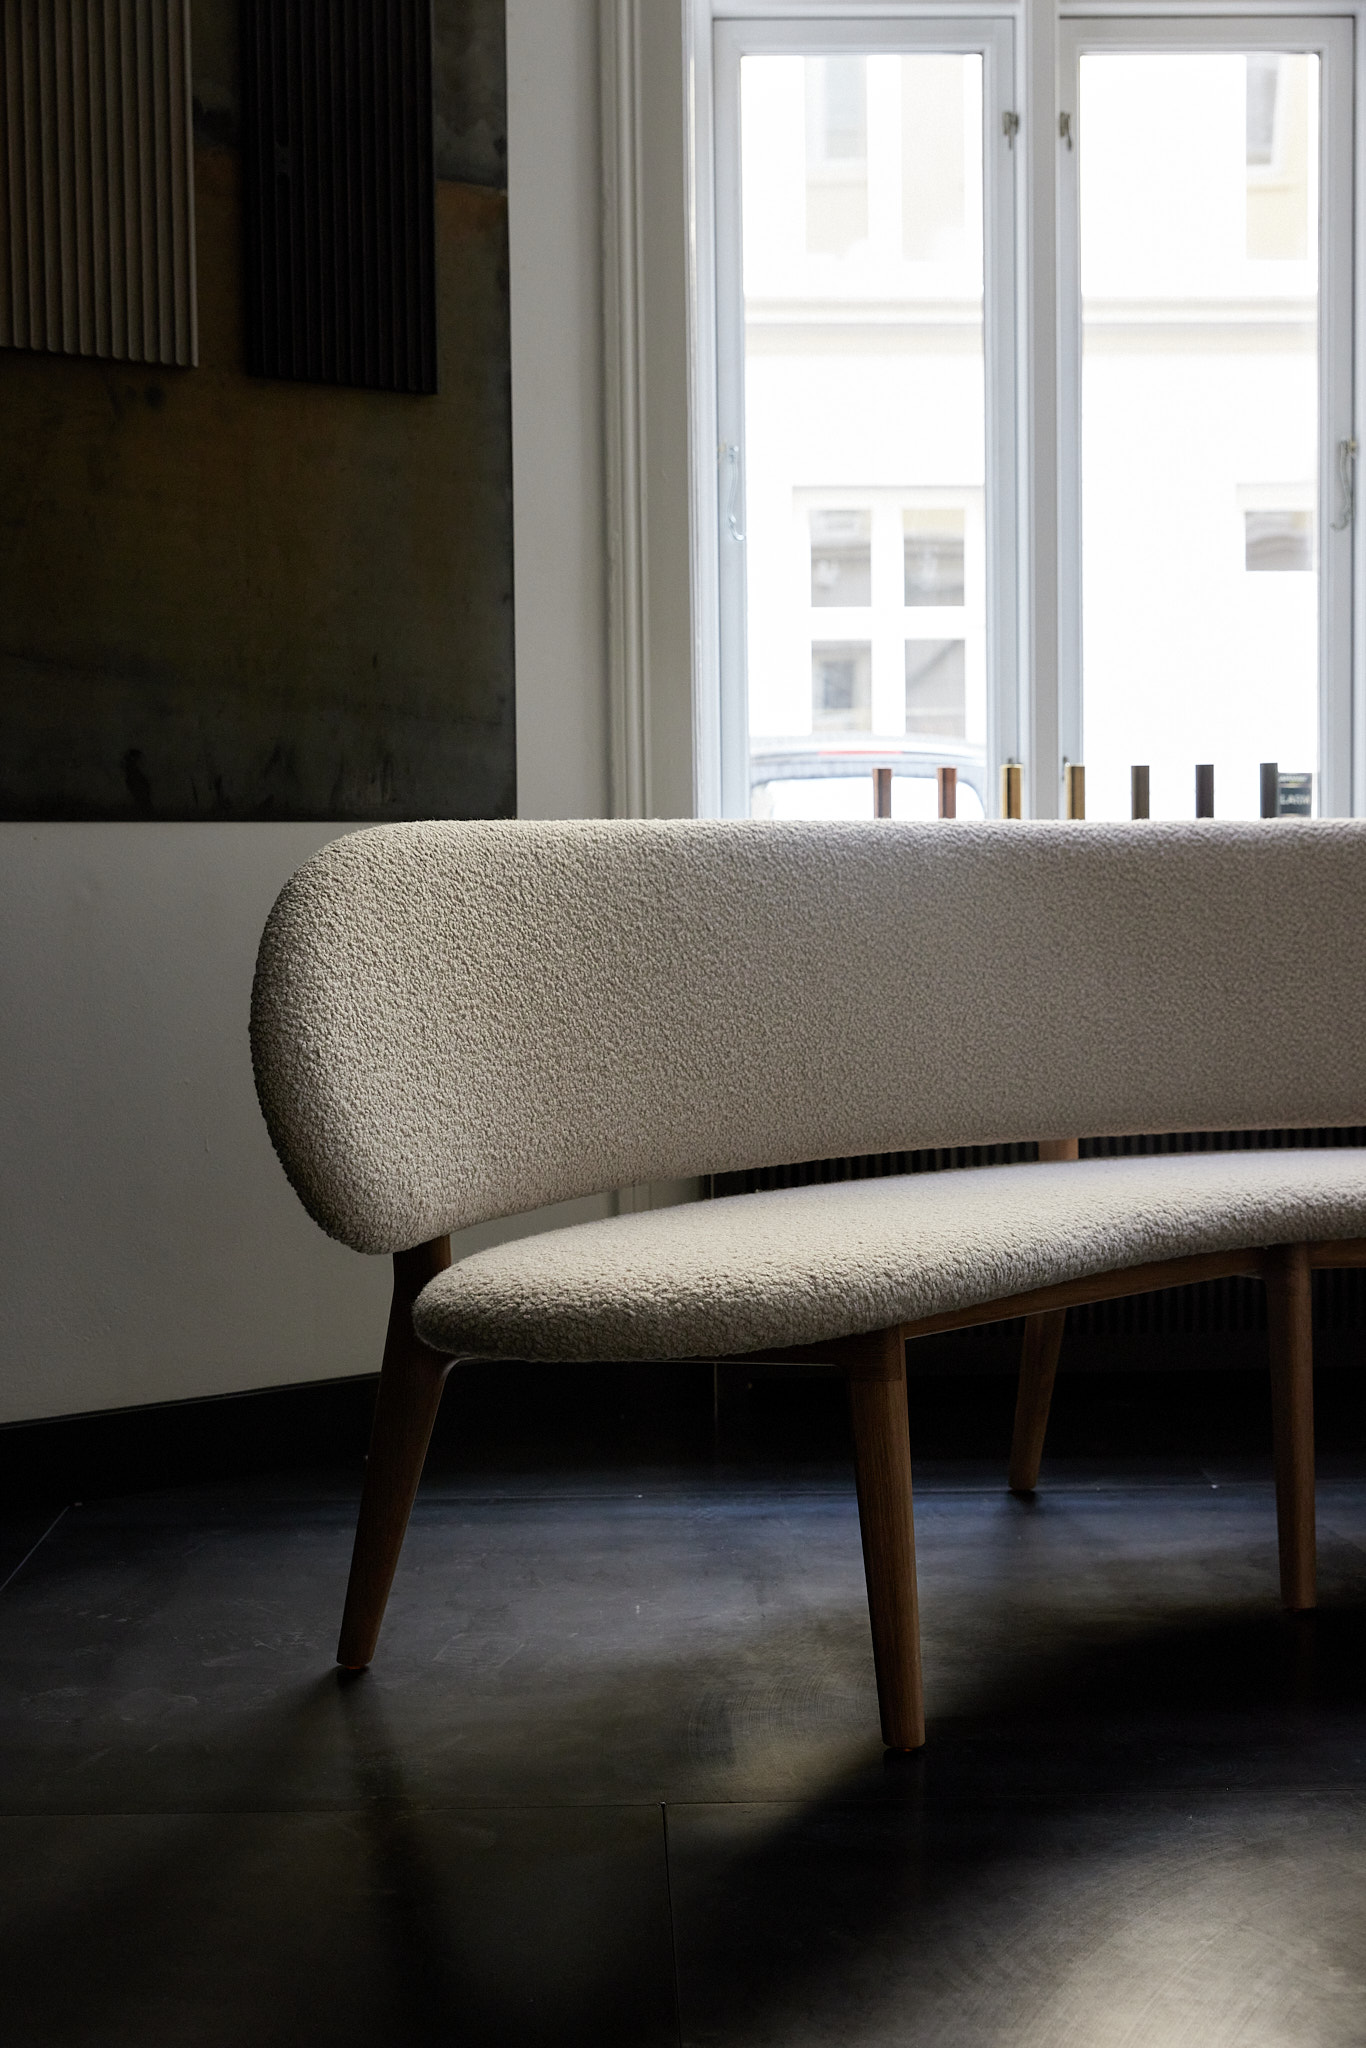 Spisebordsofa designet og lavet af Malte Gormsen Møbelsnedkeri for restaurant Geranium.